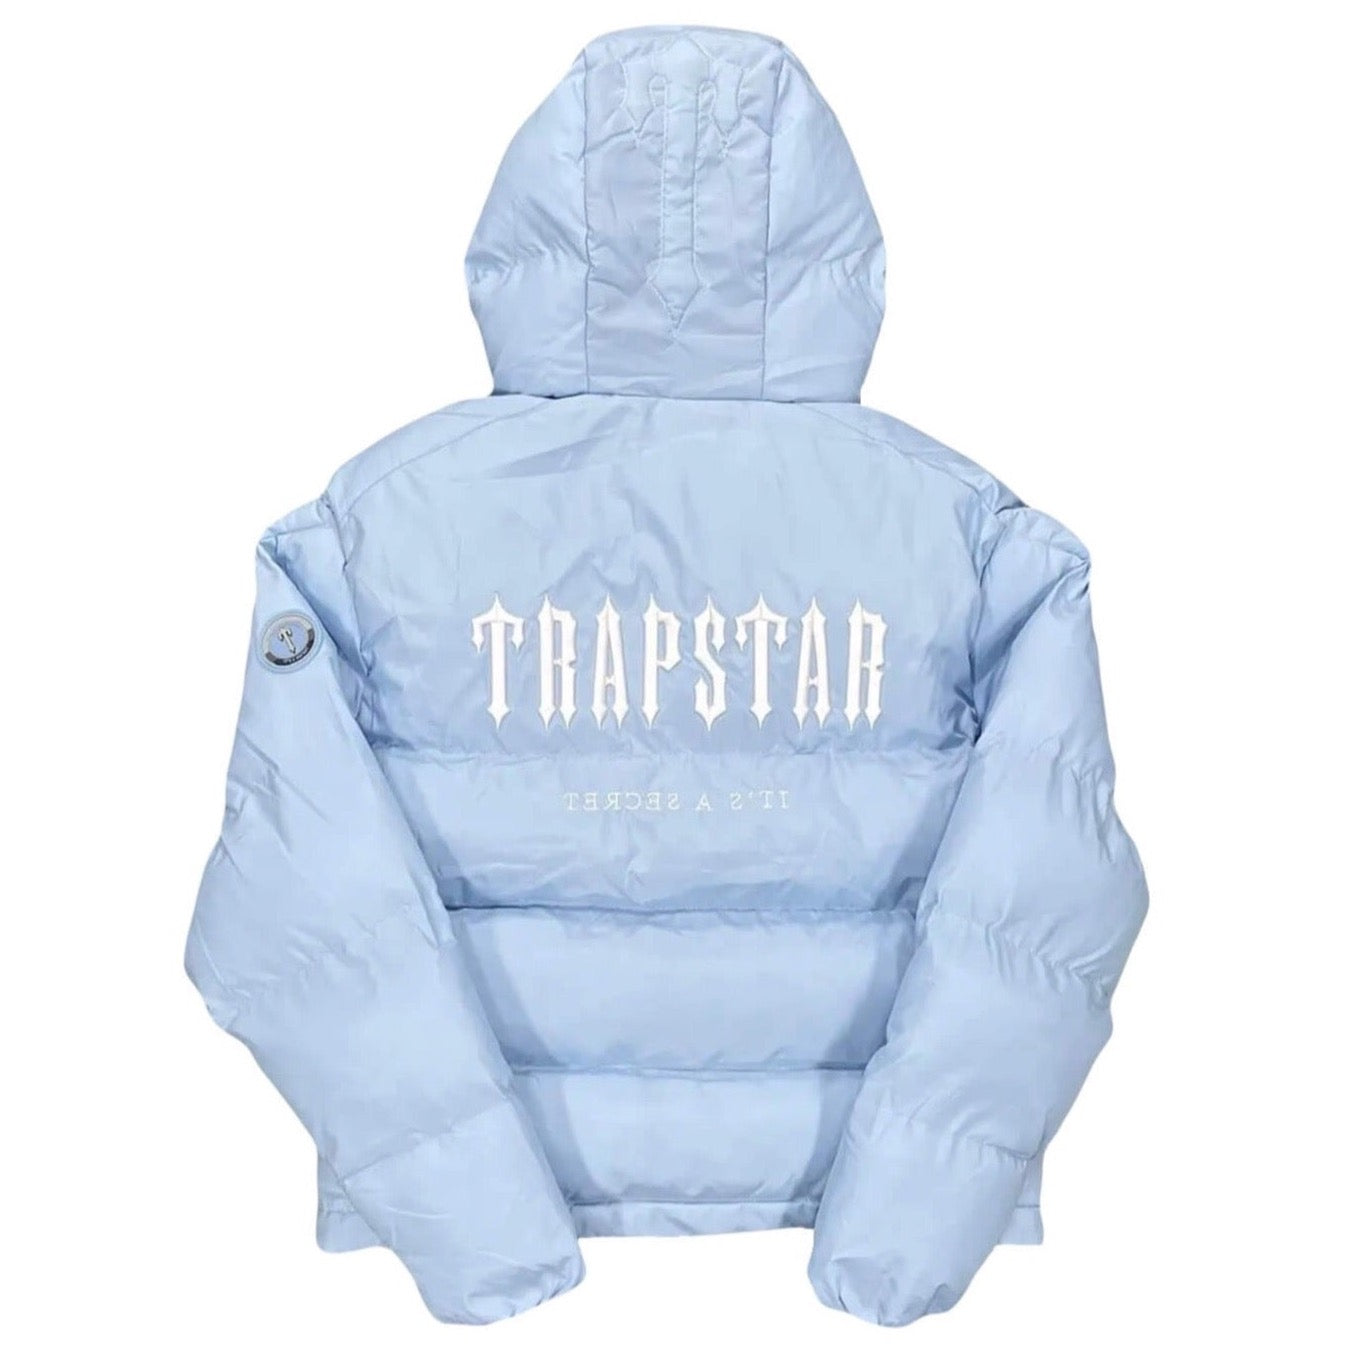 Trapstar Cloud Windbreaker Jacket Lightweight Jacket 